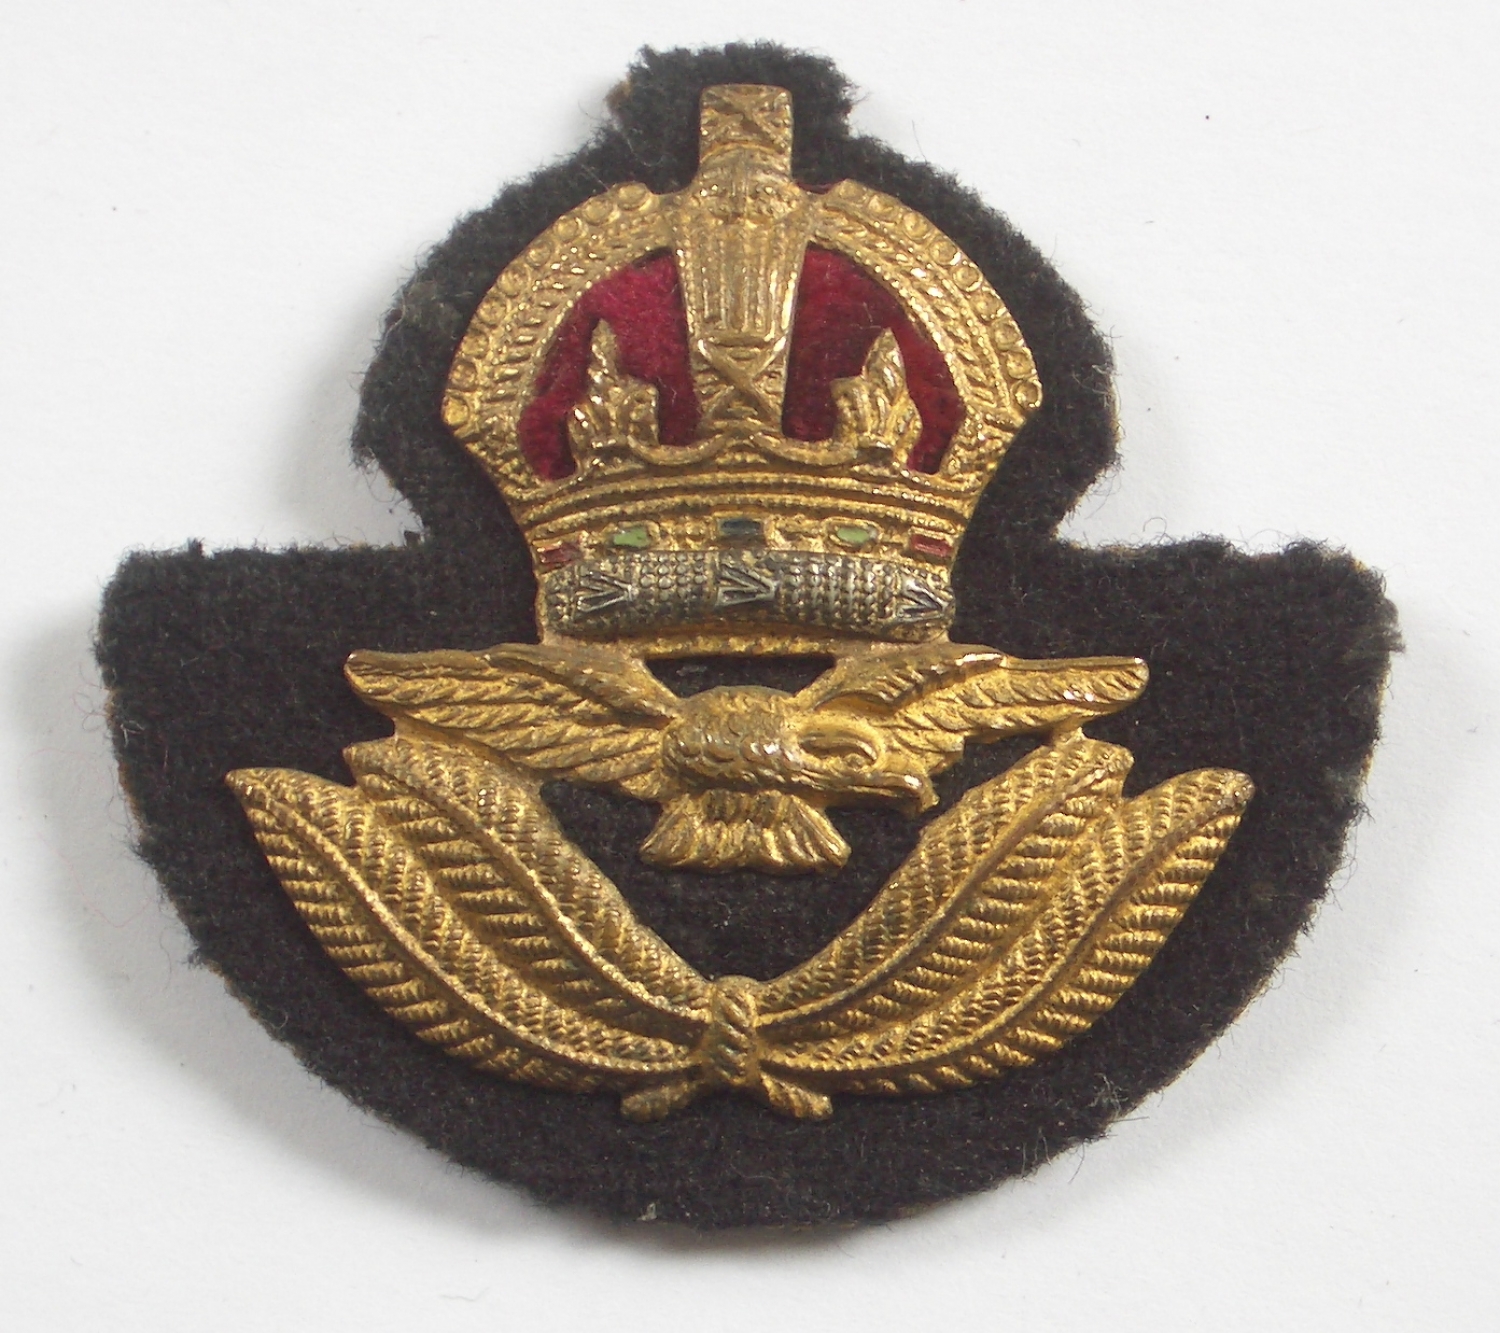 RAF Officer's Kings Crown beret badge